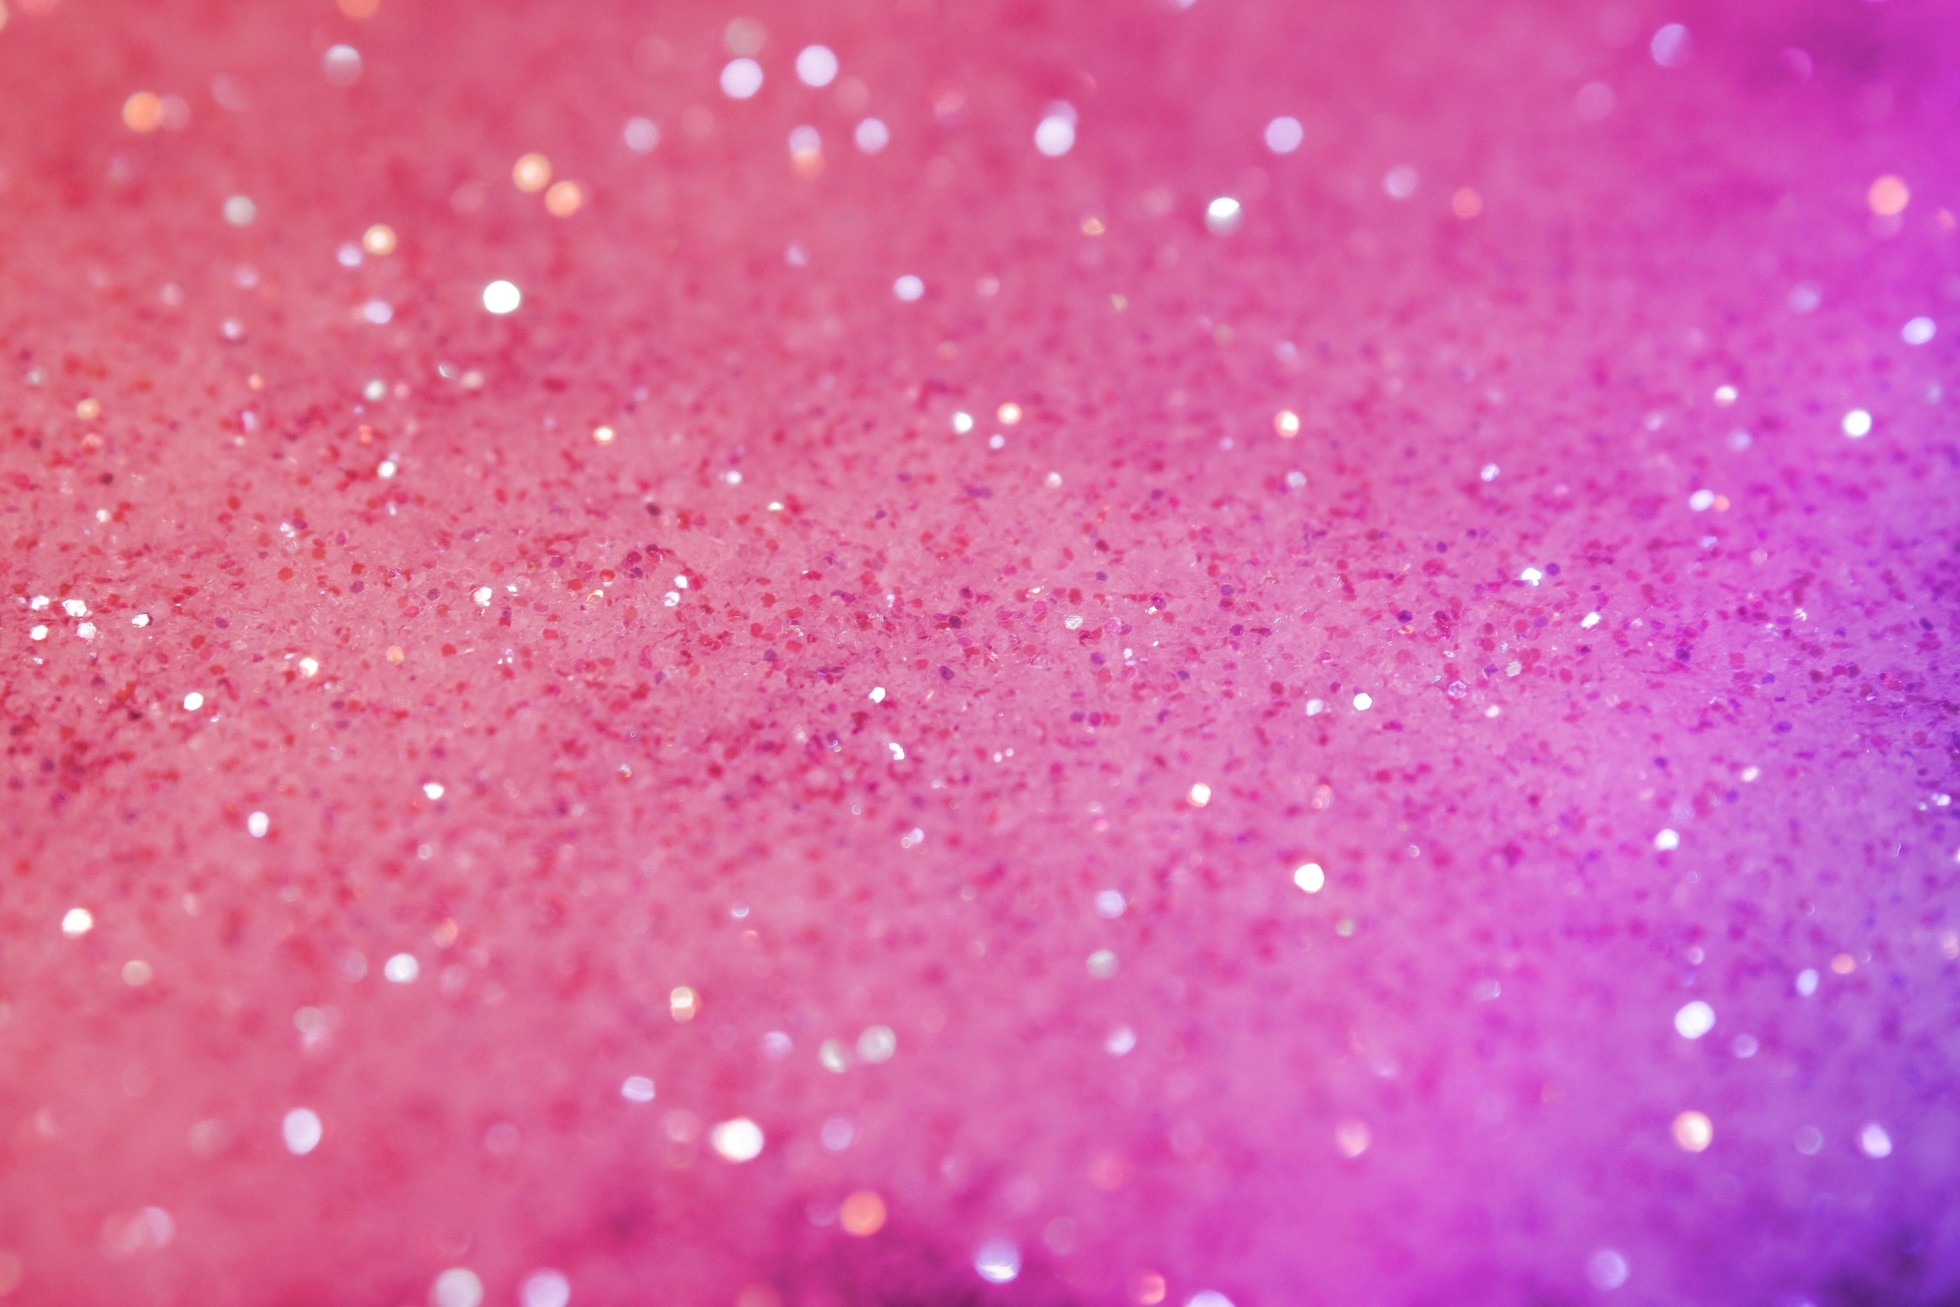 1960x1307 Pink Glitter Desktop Backgrounds wallpaper Pink Glitter Desktop 